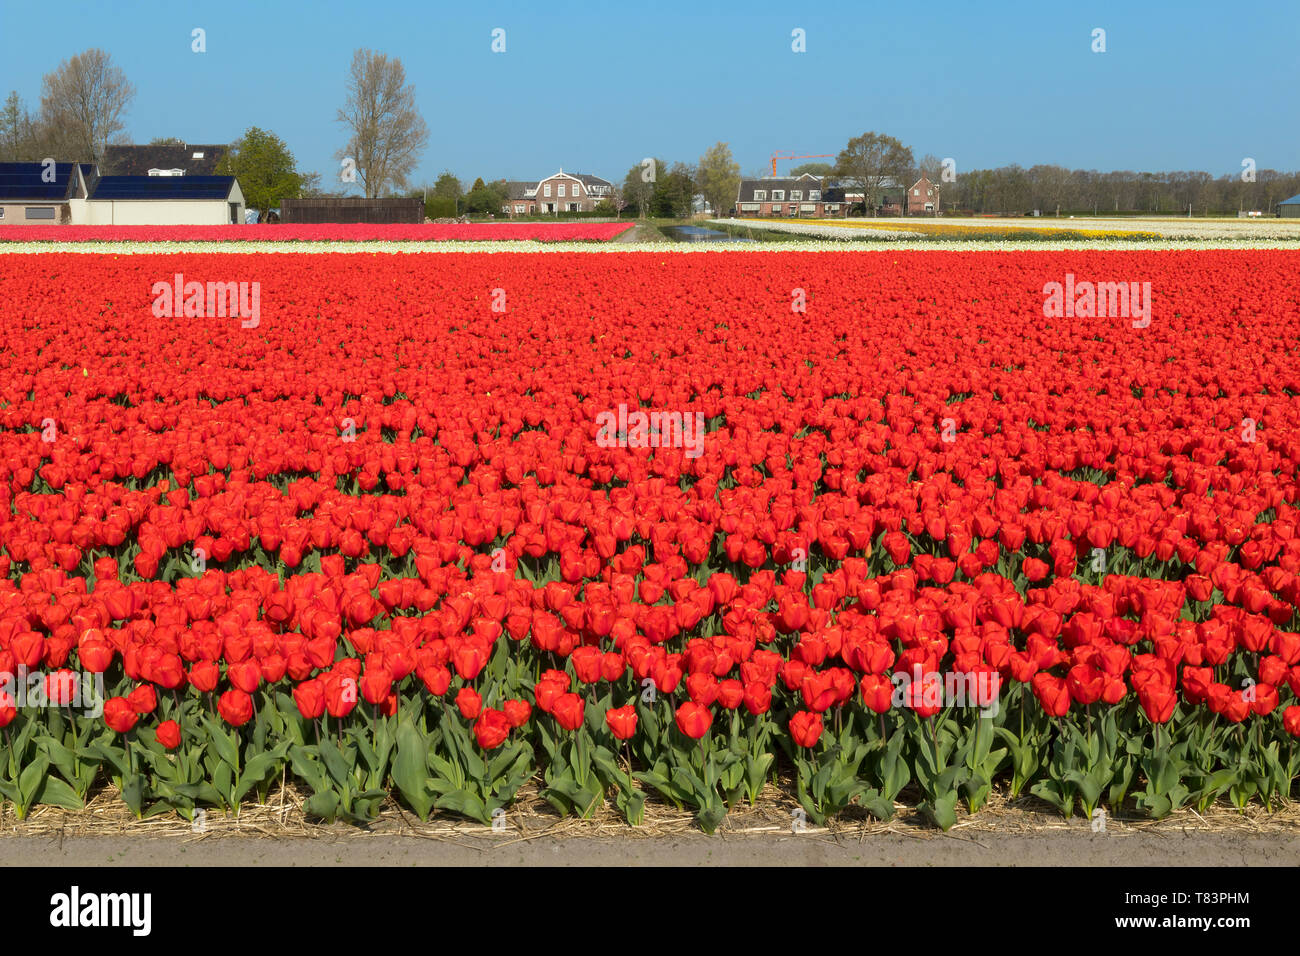 Lisse, Pays-Bas - 18 Avril 2019 : champ de tulipes hollandais traditionnel avec des rangées de fleurs rouges et maisons en arrière-plan Banque D'Images